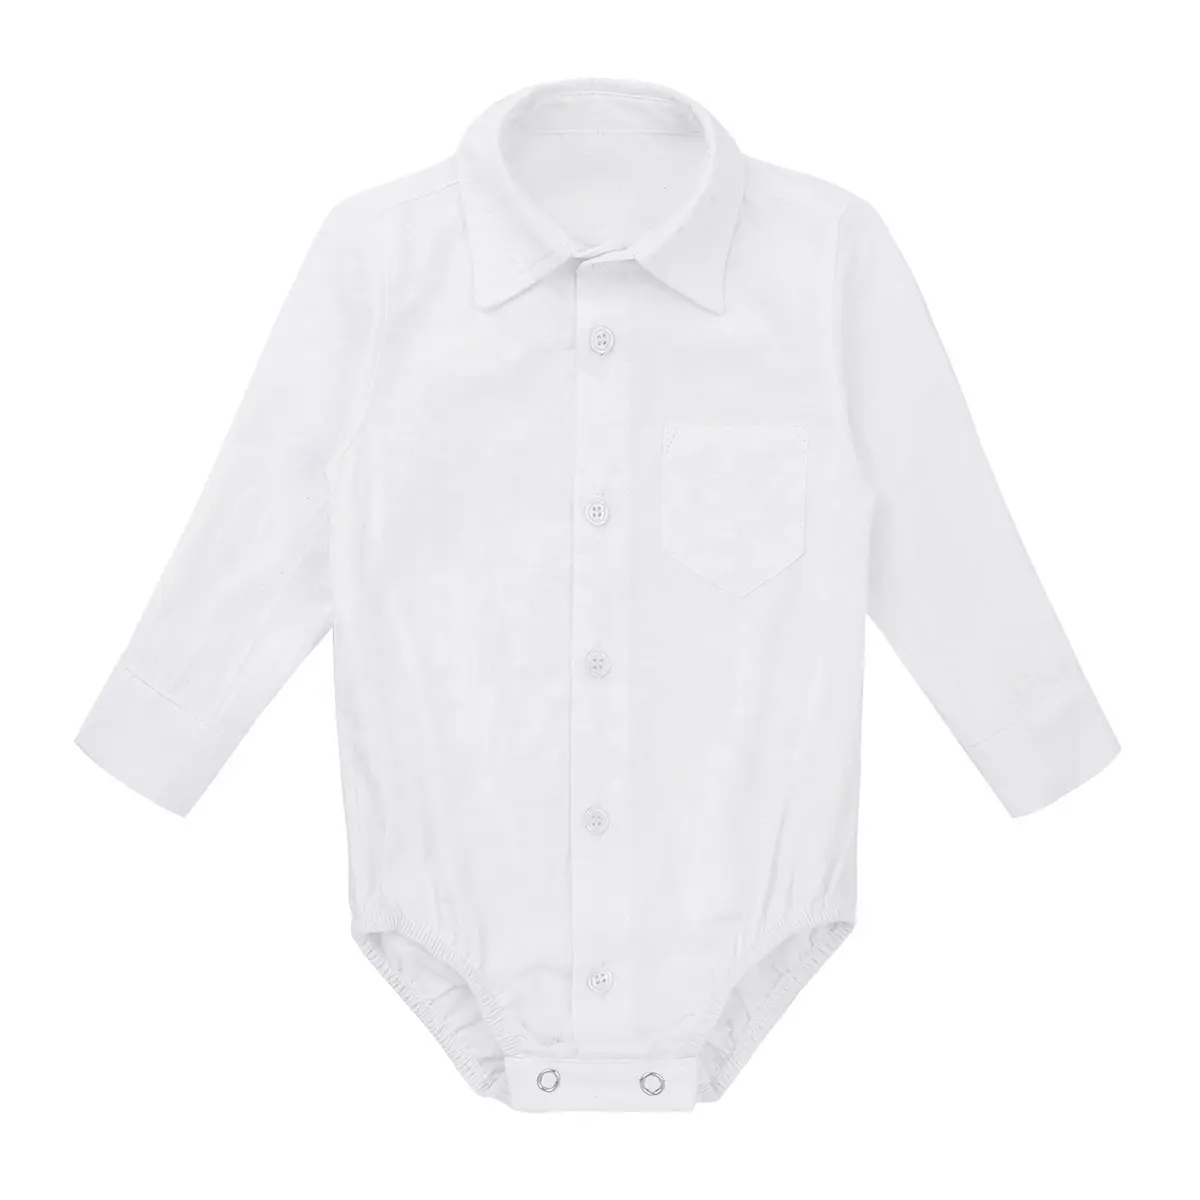 الرضع ملابس الطفل الفتيان طويلة الأكمام الرسمي شهم قميص رومبير ملابس طفل صغير بذلة السروال القصير ل الوليد 3 إلى 24 شهرا